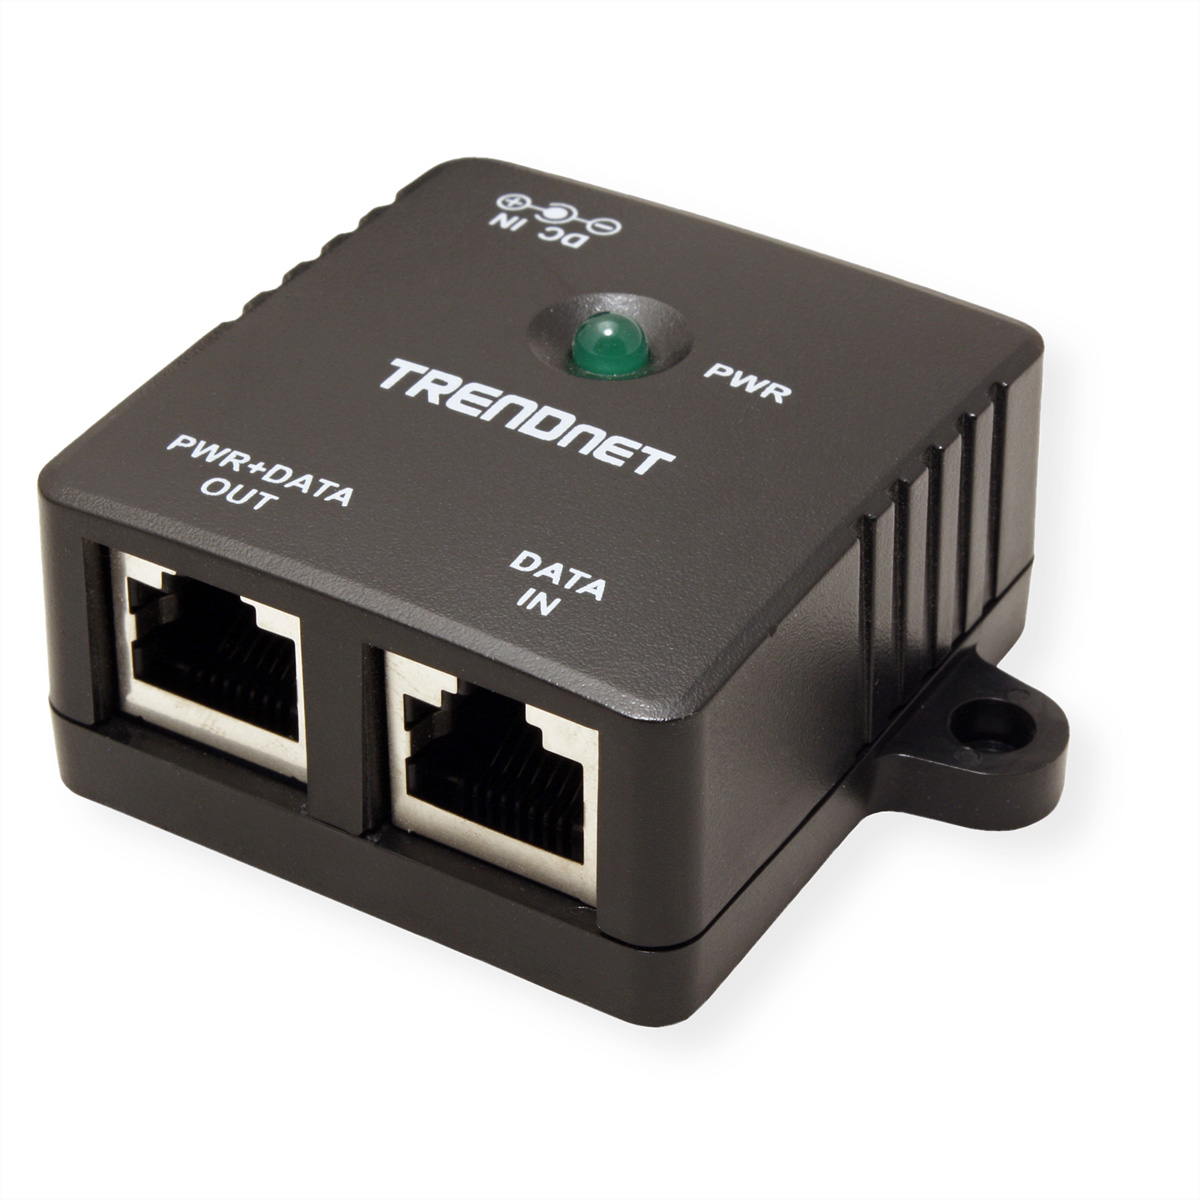 TRENDnet TPE-113GI Gigabit PoE Injector